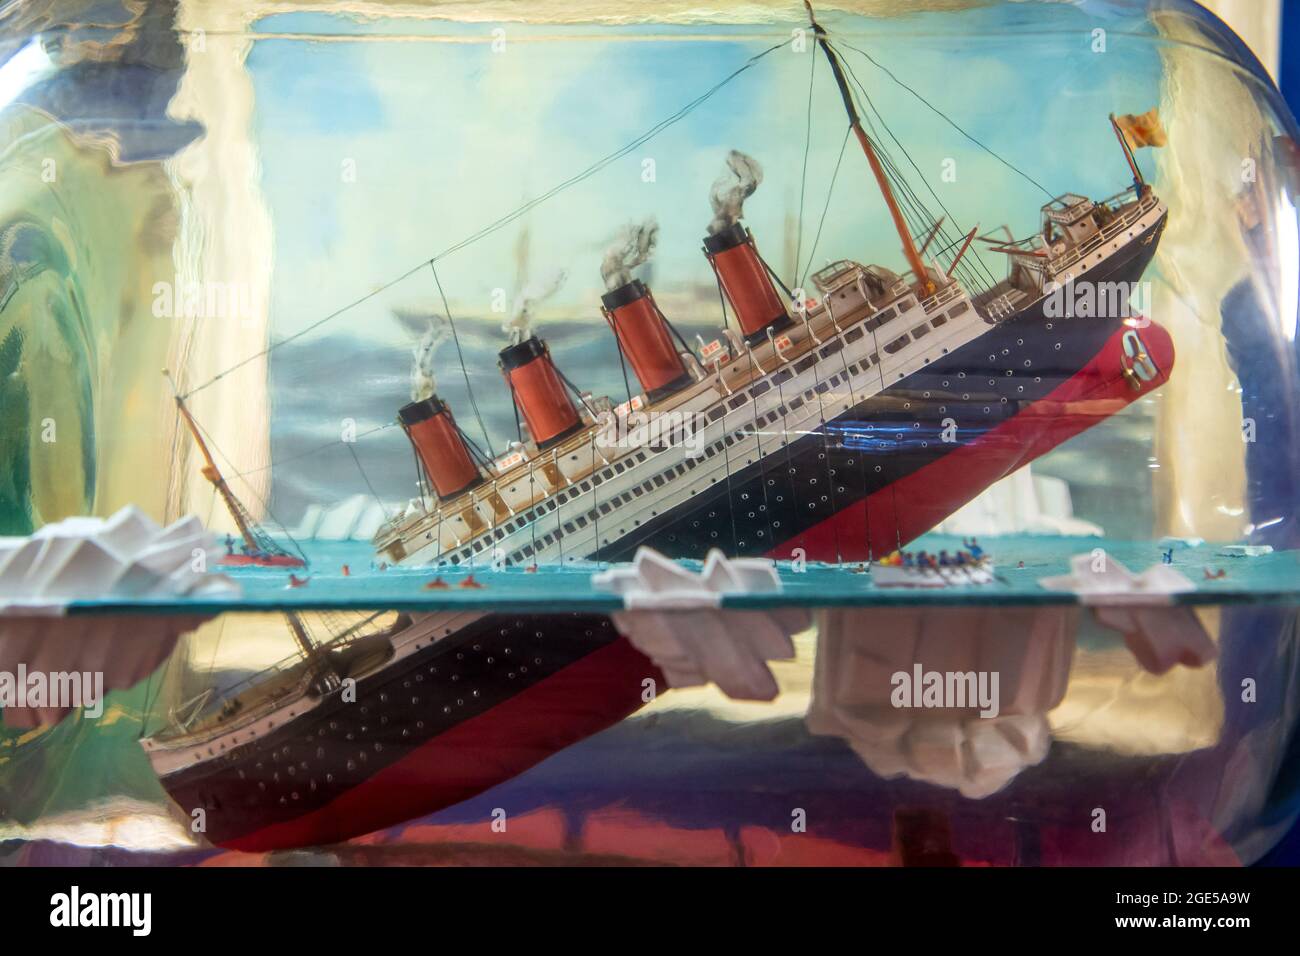 Titanic on Tour Exhibit Photos — Sense & Sensibility Patterns